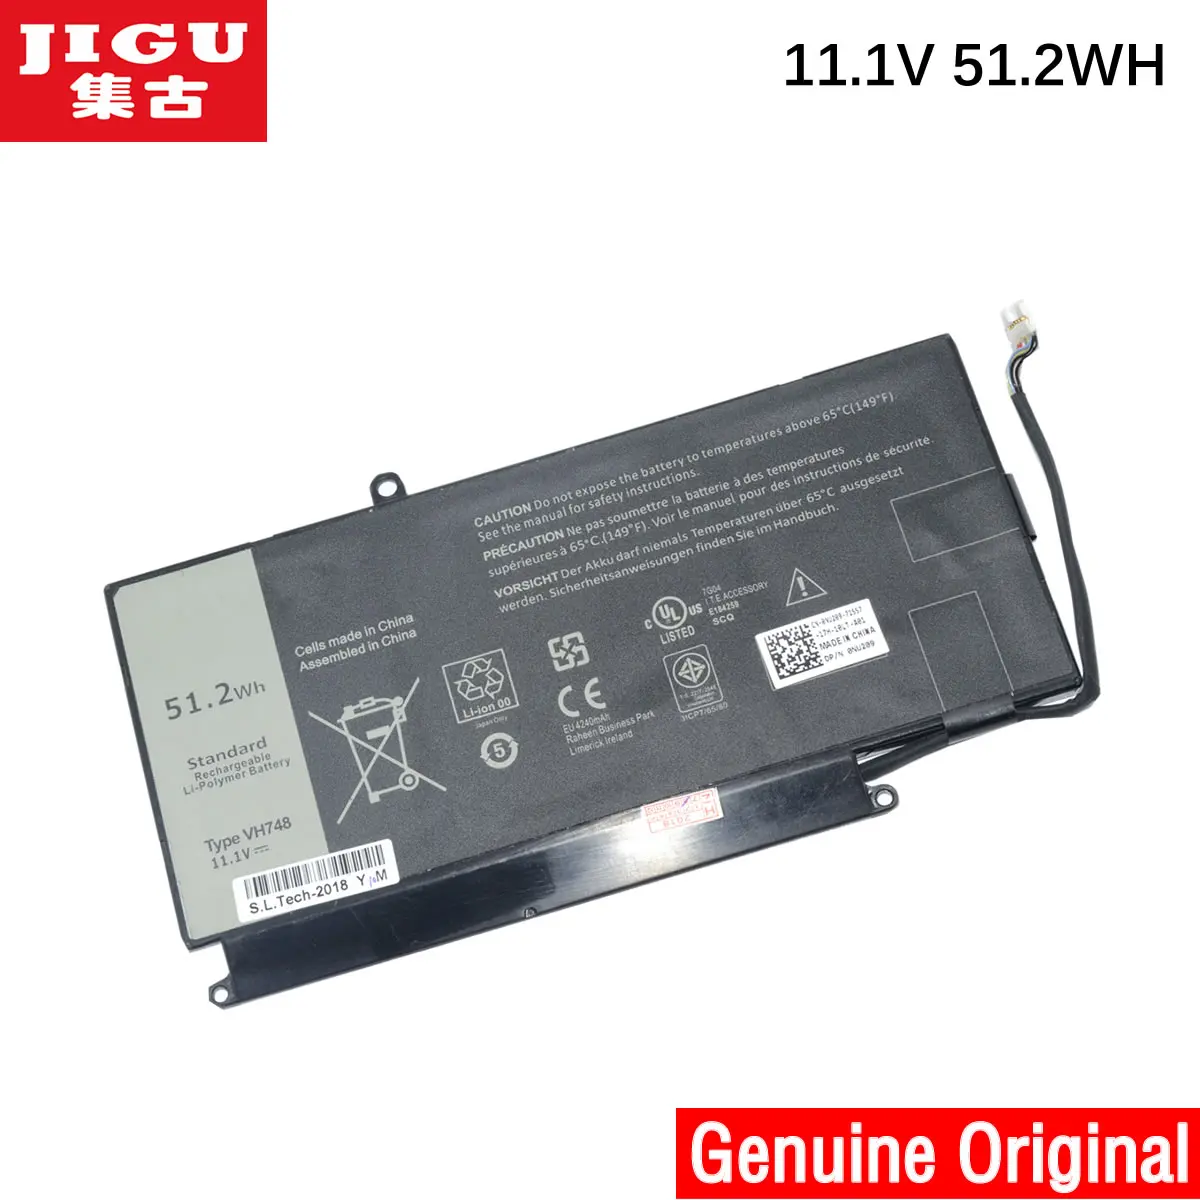 

JIGU VH748 Original Laptop Battery For Dell V5560 V5460 V5470 For Inspiron 14-5439